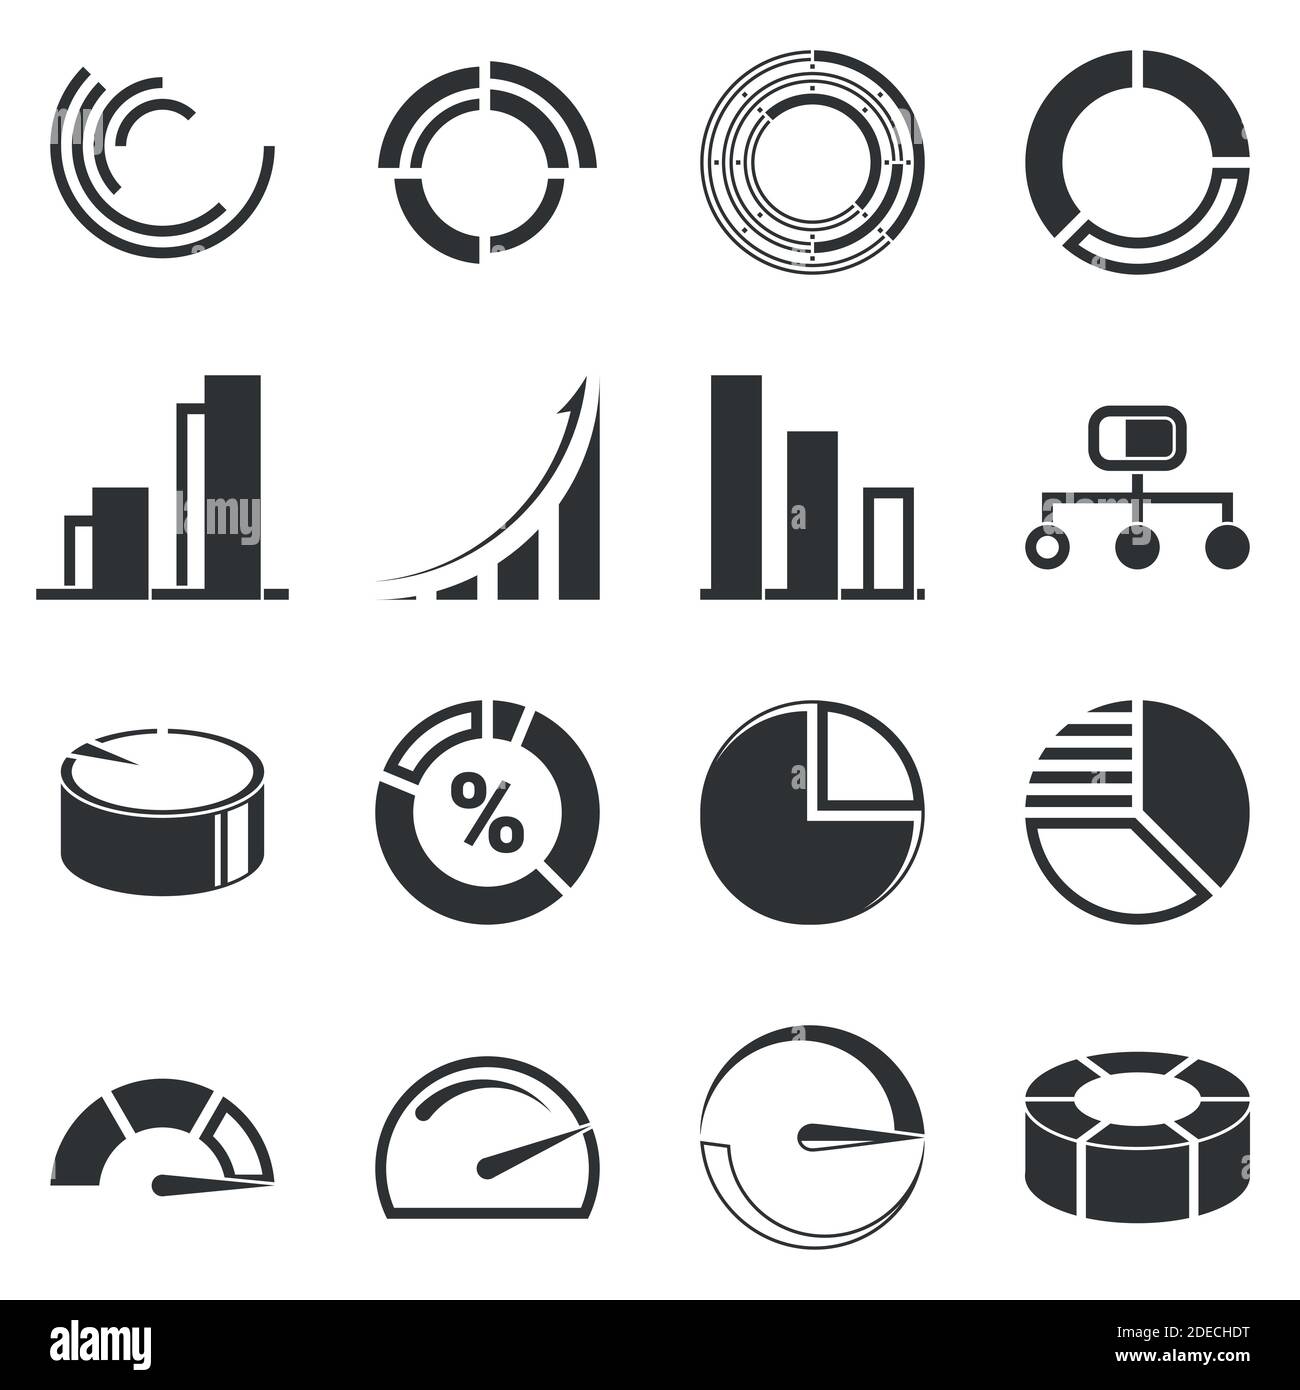 Icone infografiche aziendali - Grafica vettoriale Illustrazione Vettoriale